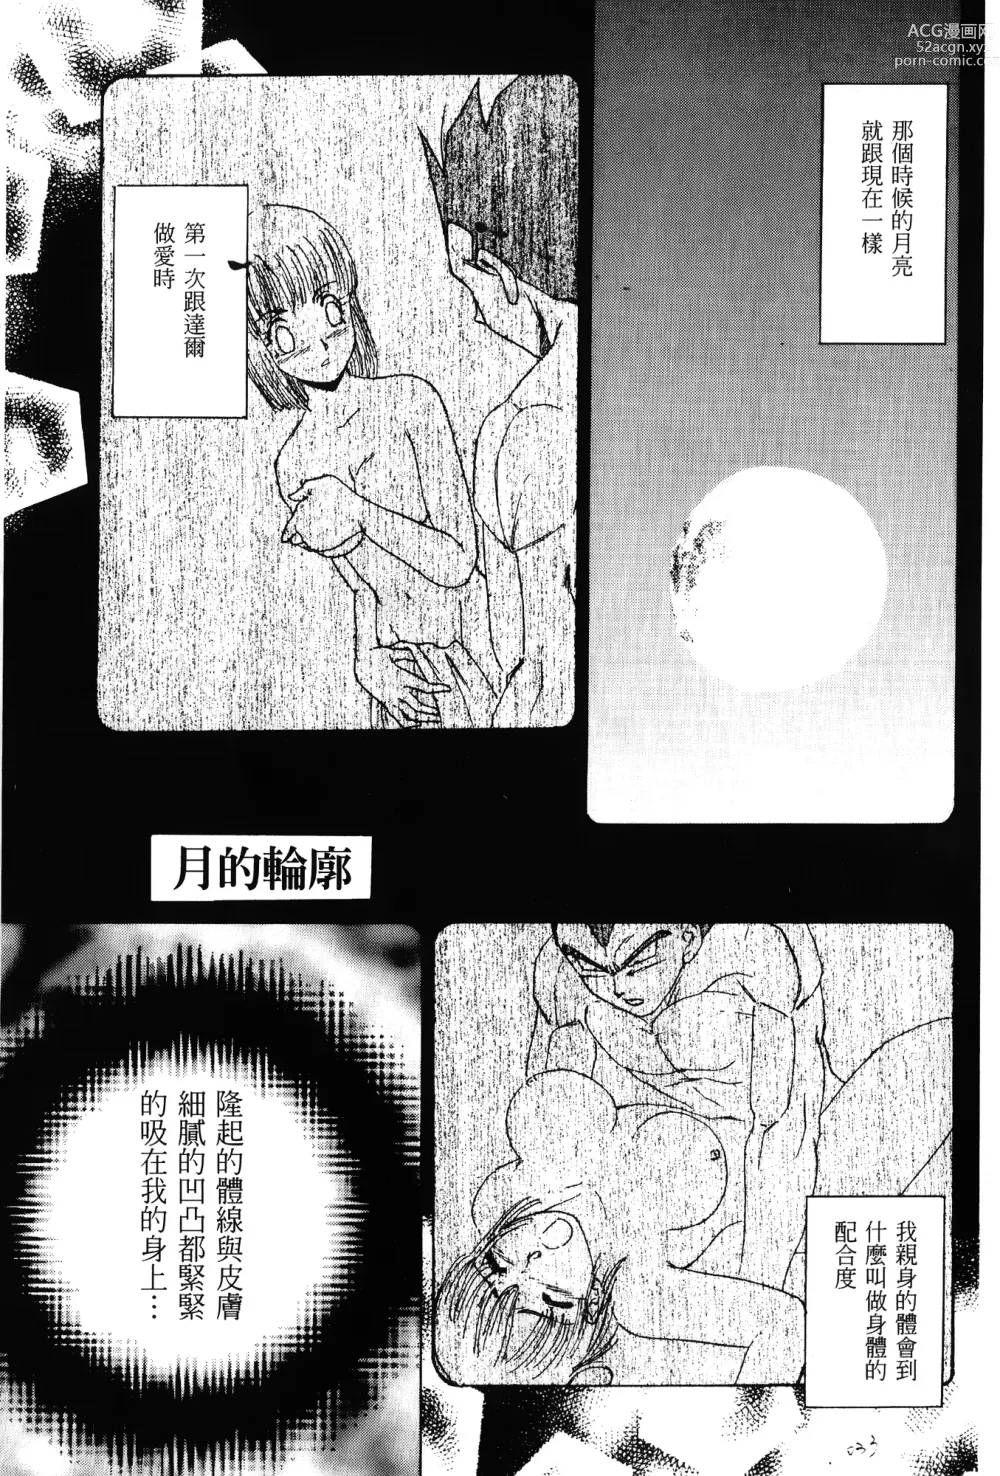 Page 34 of doujinshi ドラゴンパール 01